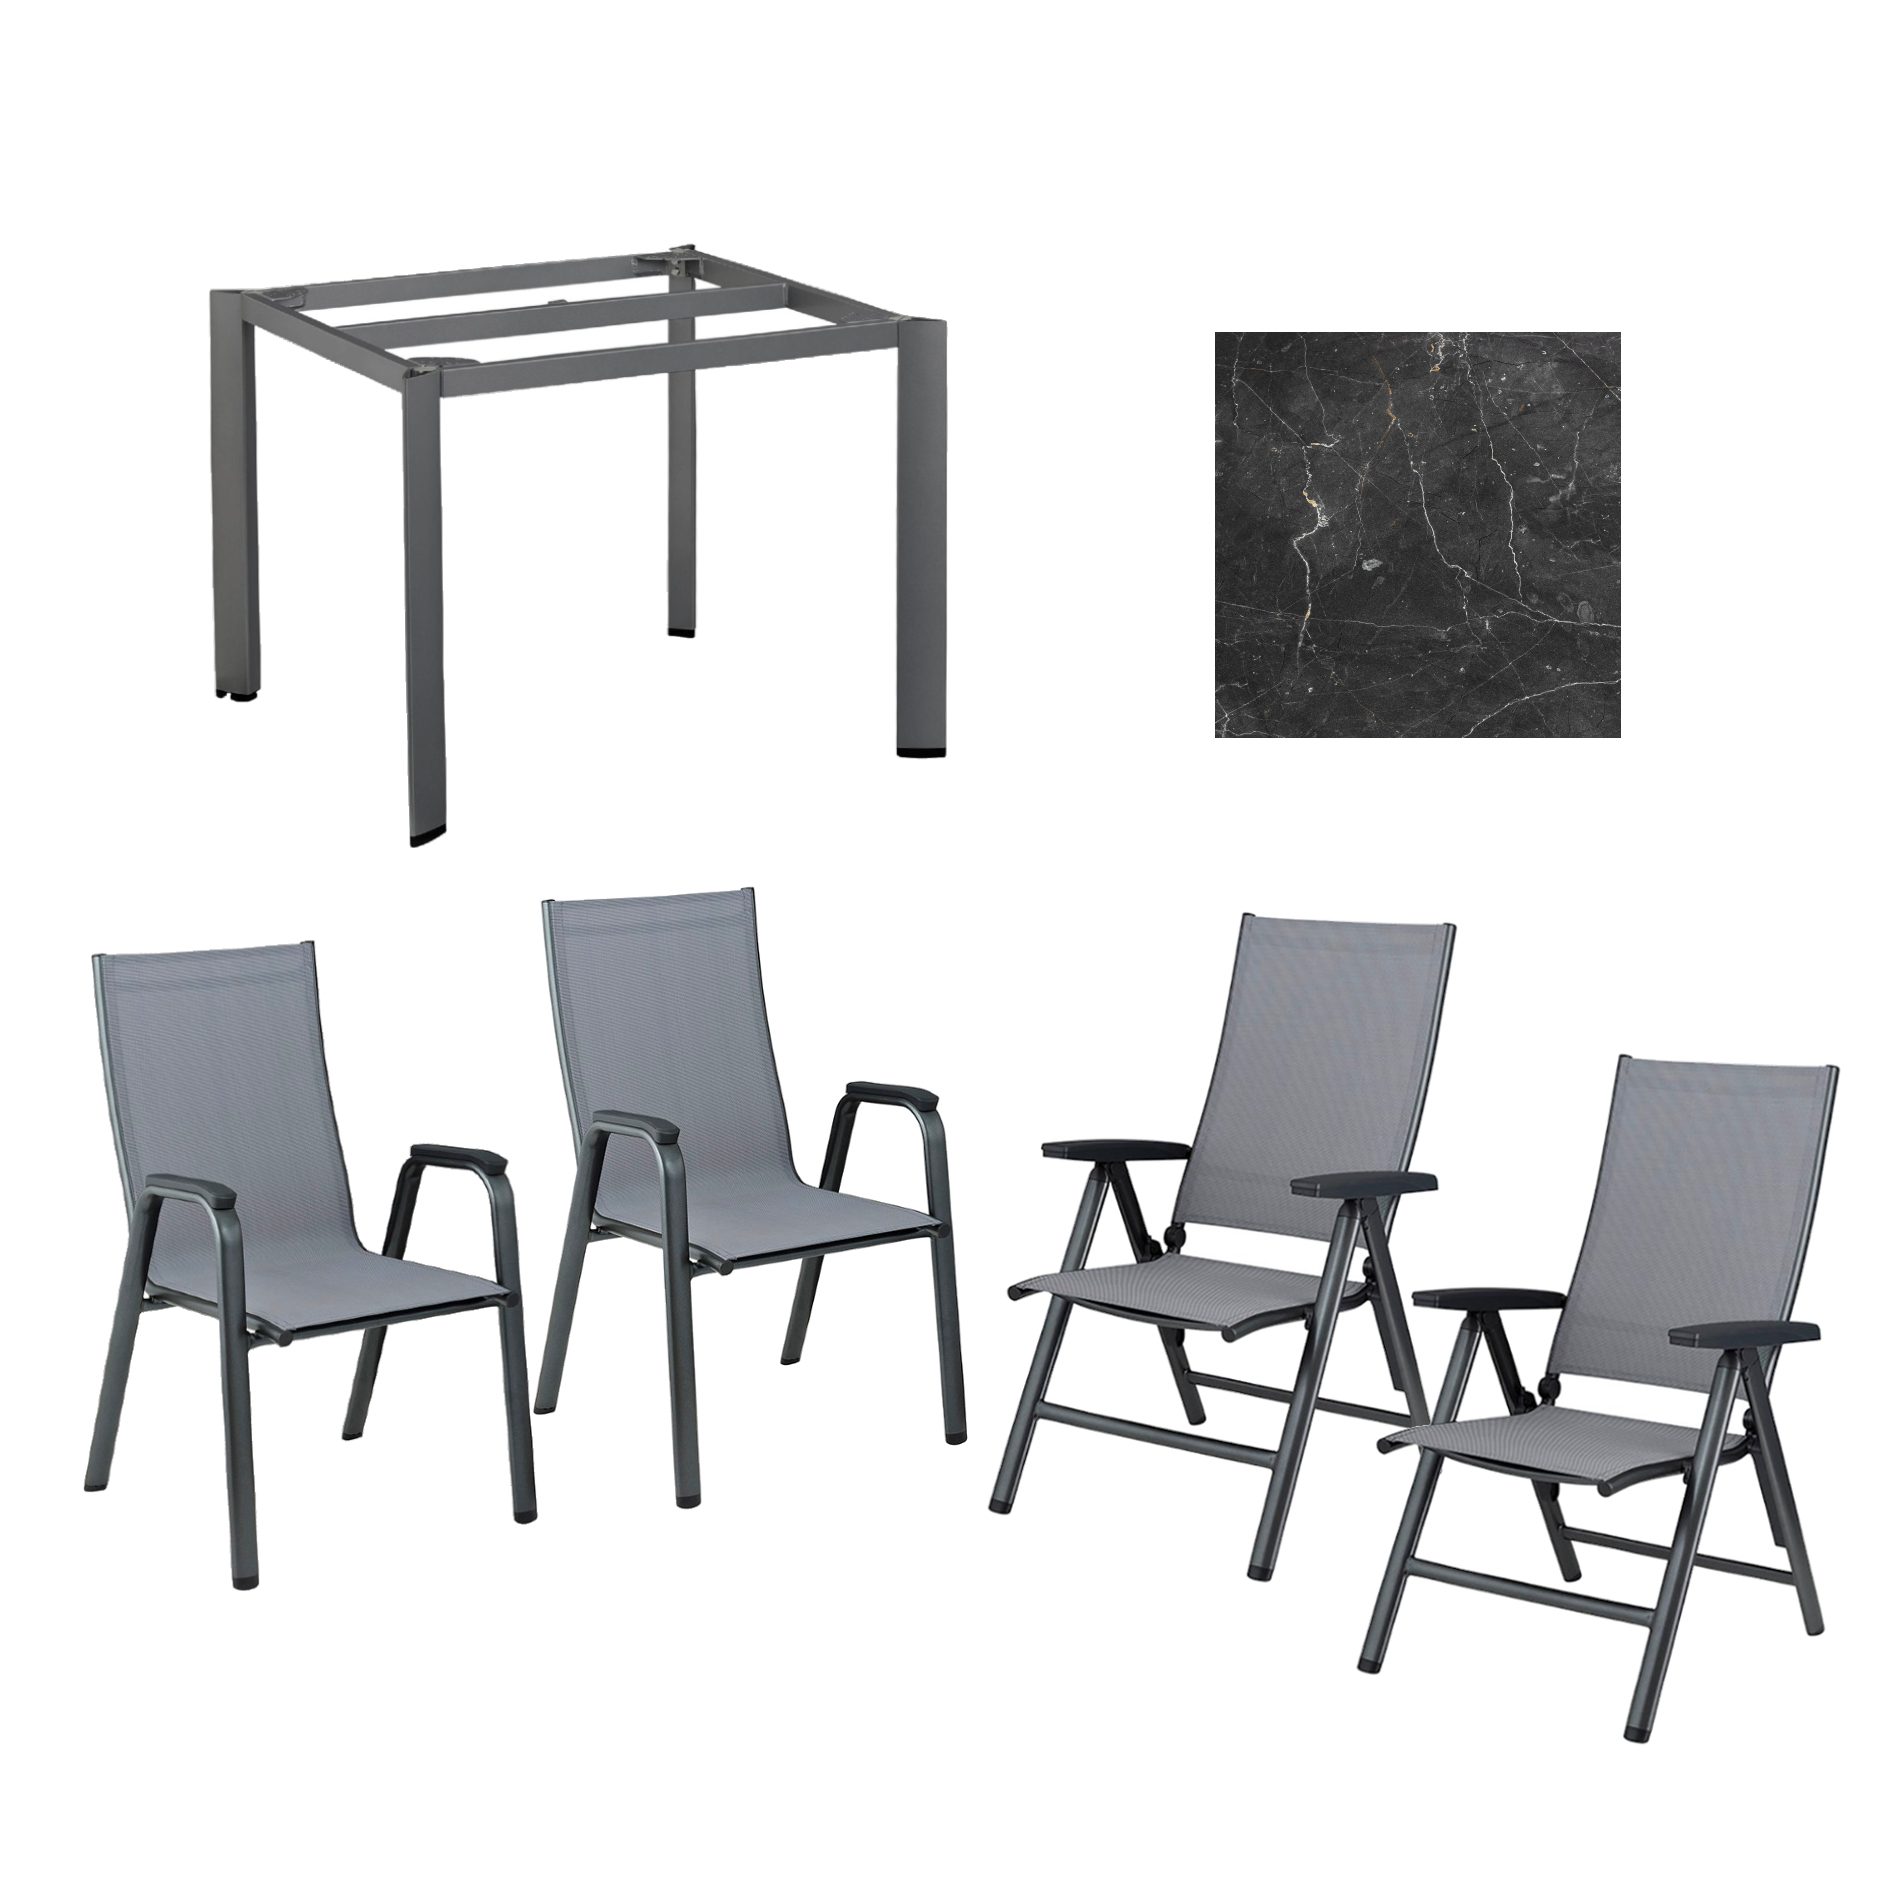 Kettler Gartenmöbel-Set mit "Cirrus" Klapp- und Stapelsessel und "Edge" Gartentisch, Gestelle Aluminium anthrazit, Sitz Textilgewebe anthrazit-grau, Tischplatte HPL Marmor grau